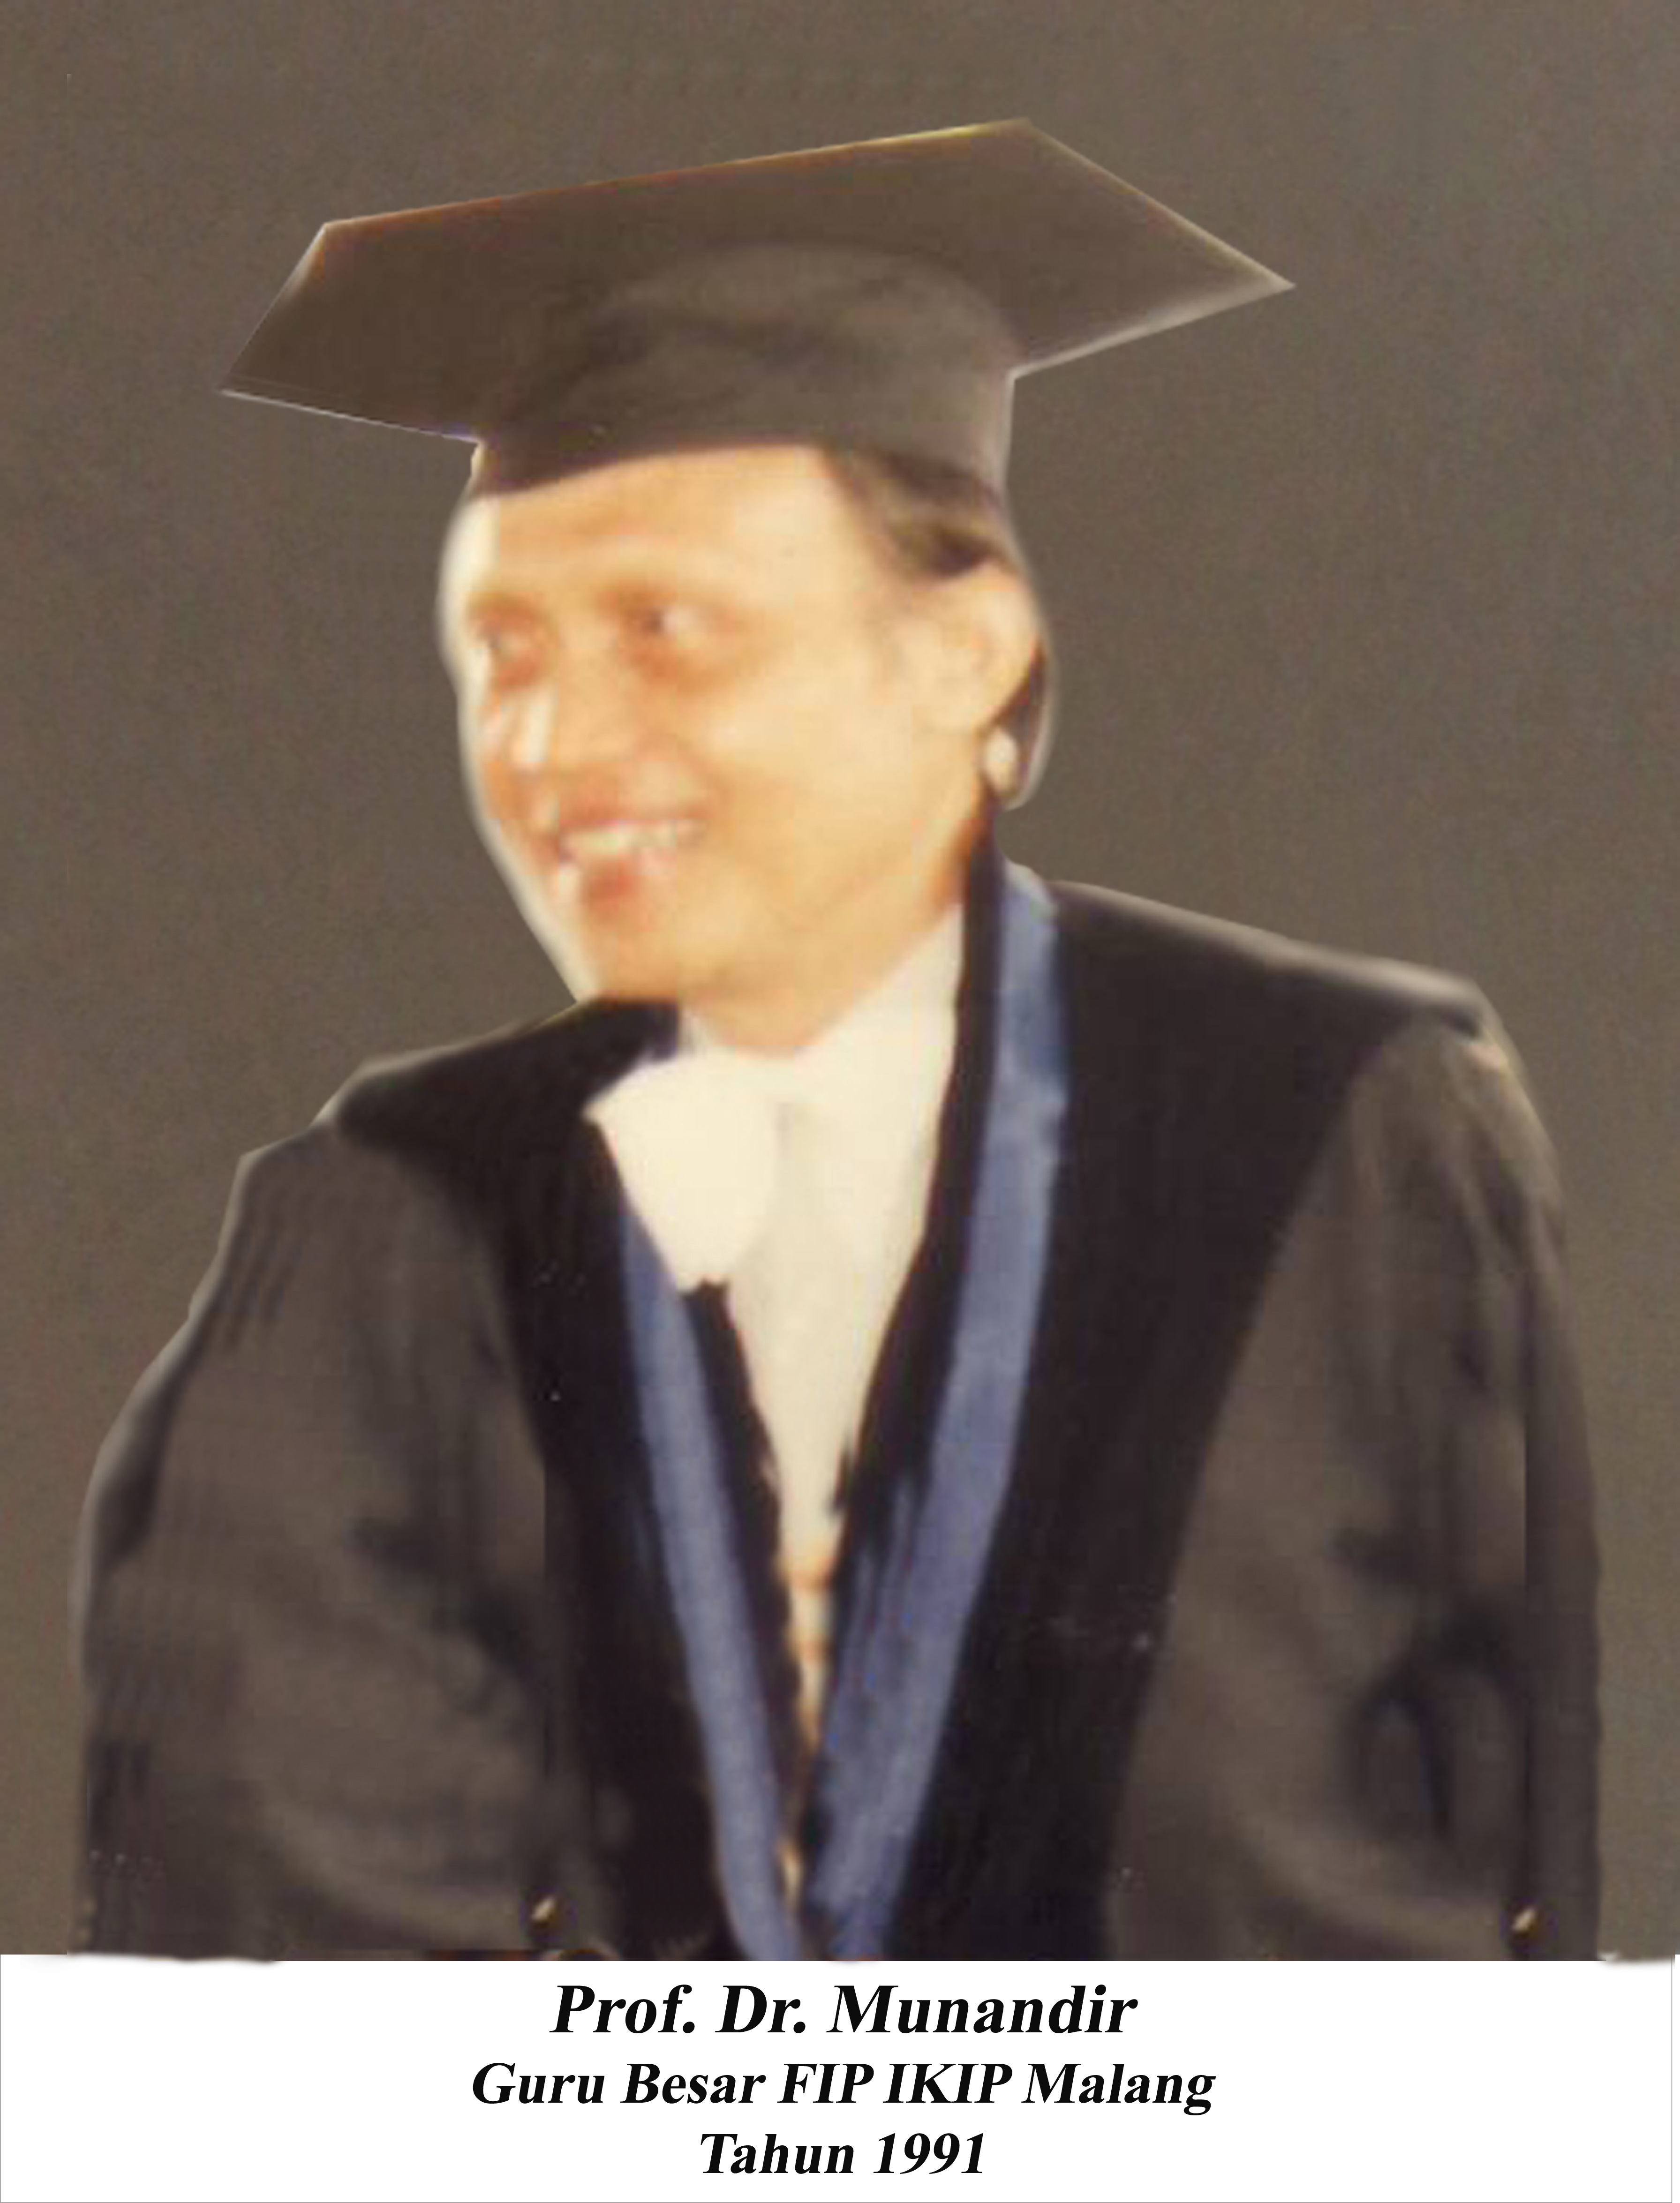 Prof. Dr. H. Munandir, MA: Bapak Bimbingan Dan Konseling Indonesia